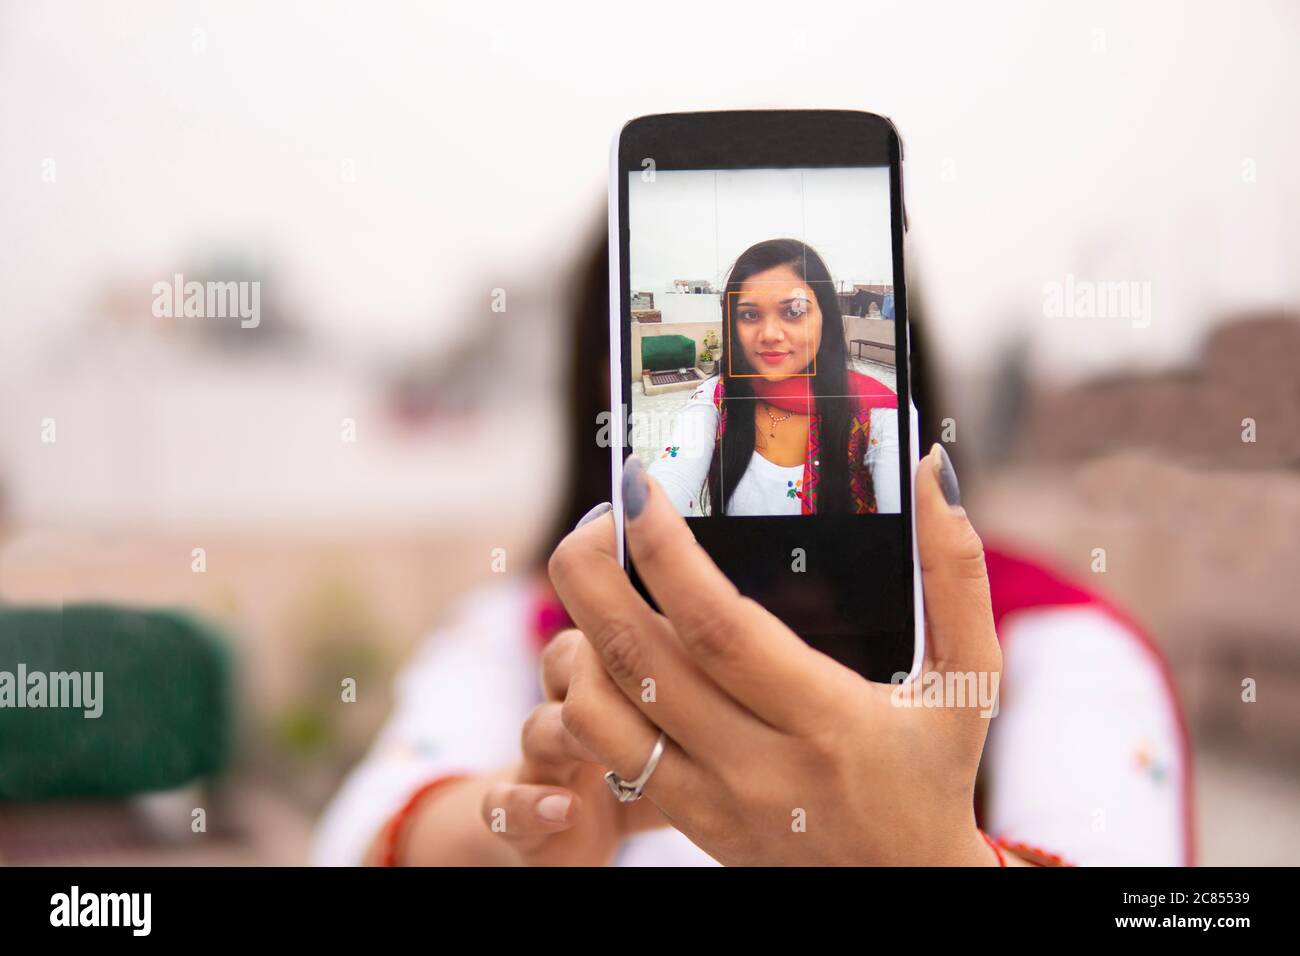 Schöne, glückliche indische junge Frau, die Selfie über das Smartphone macht und die Kamera anschaut. Sie trägt traditionelle Kleidung Salwar Kameez. Stockfoto